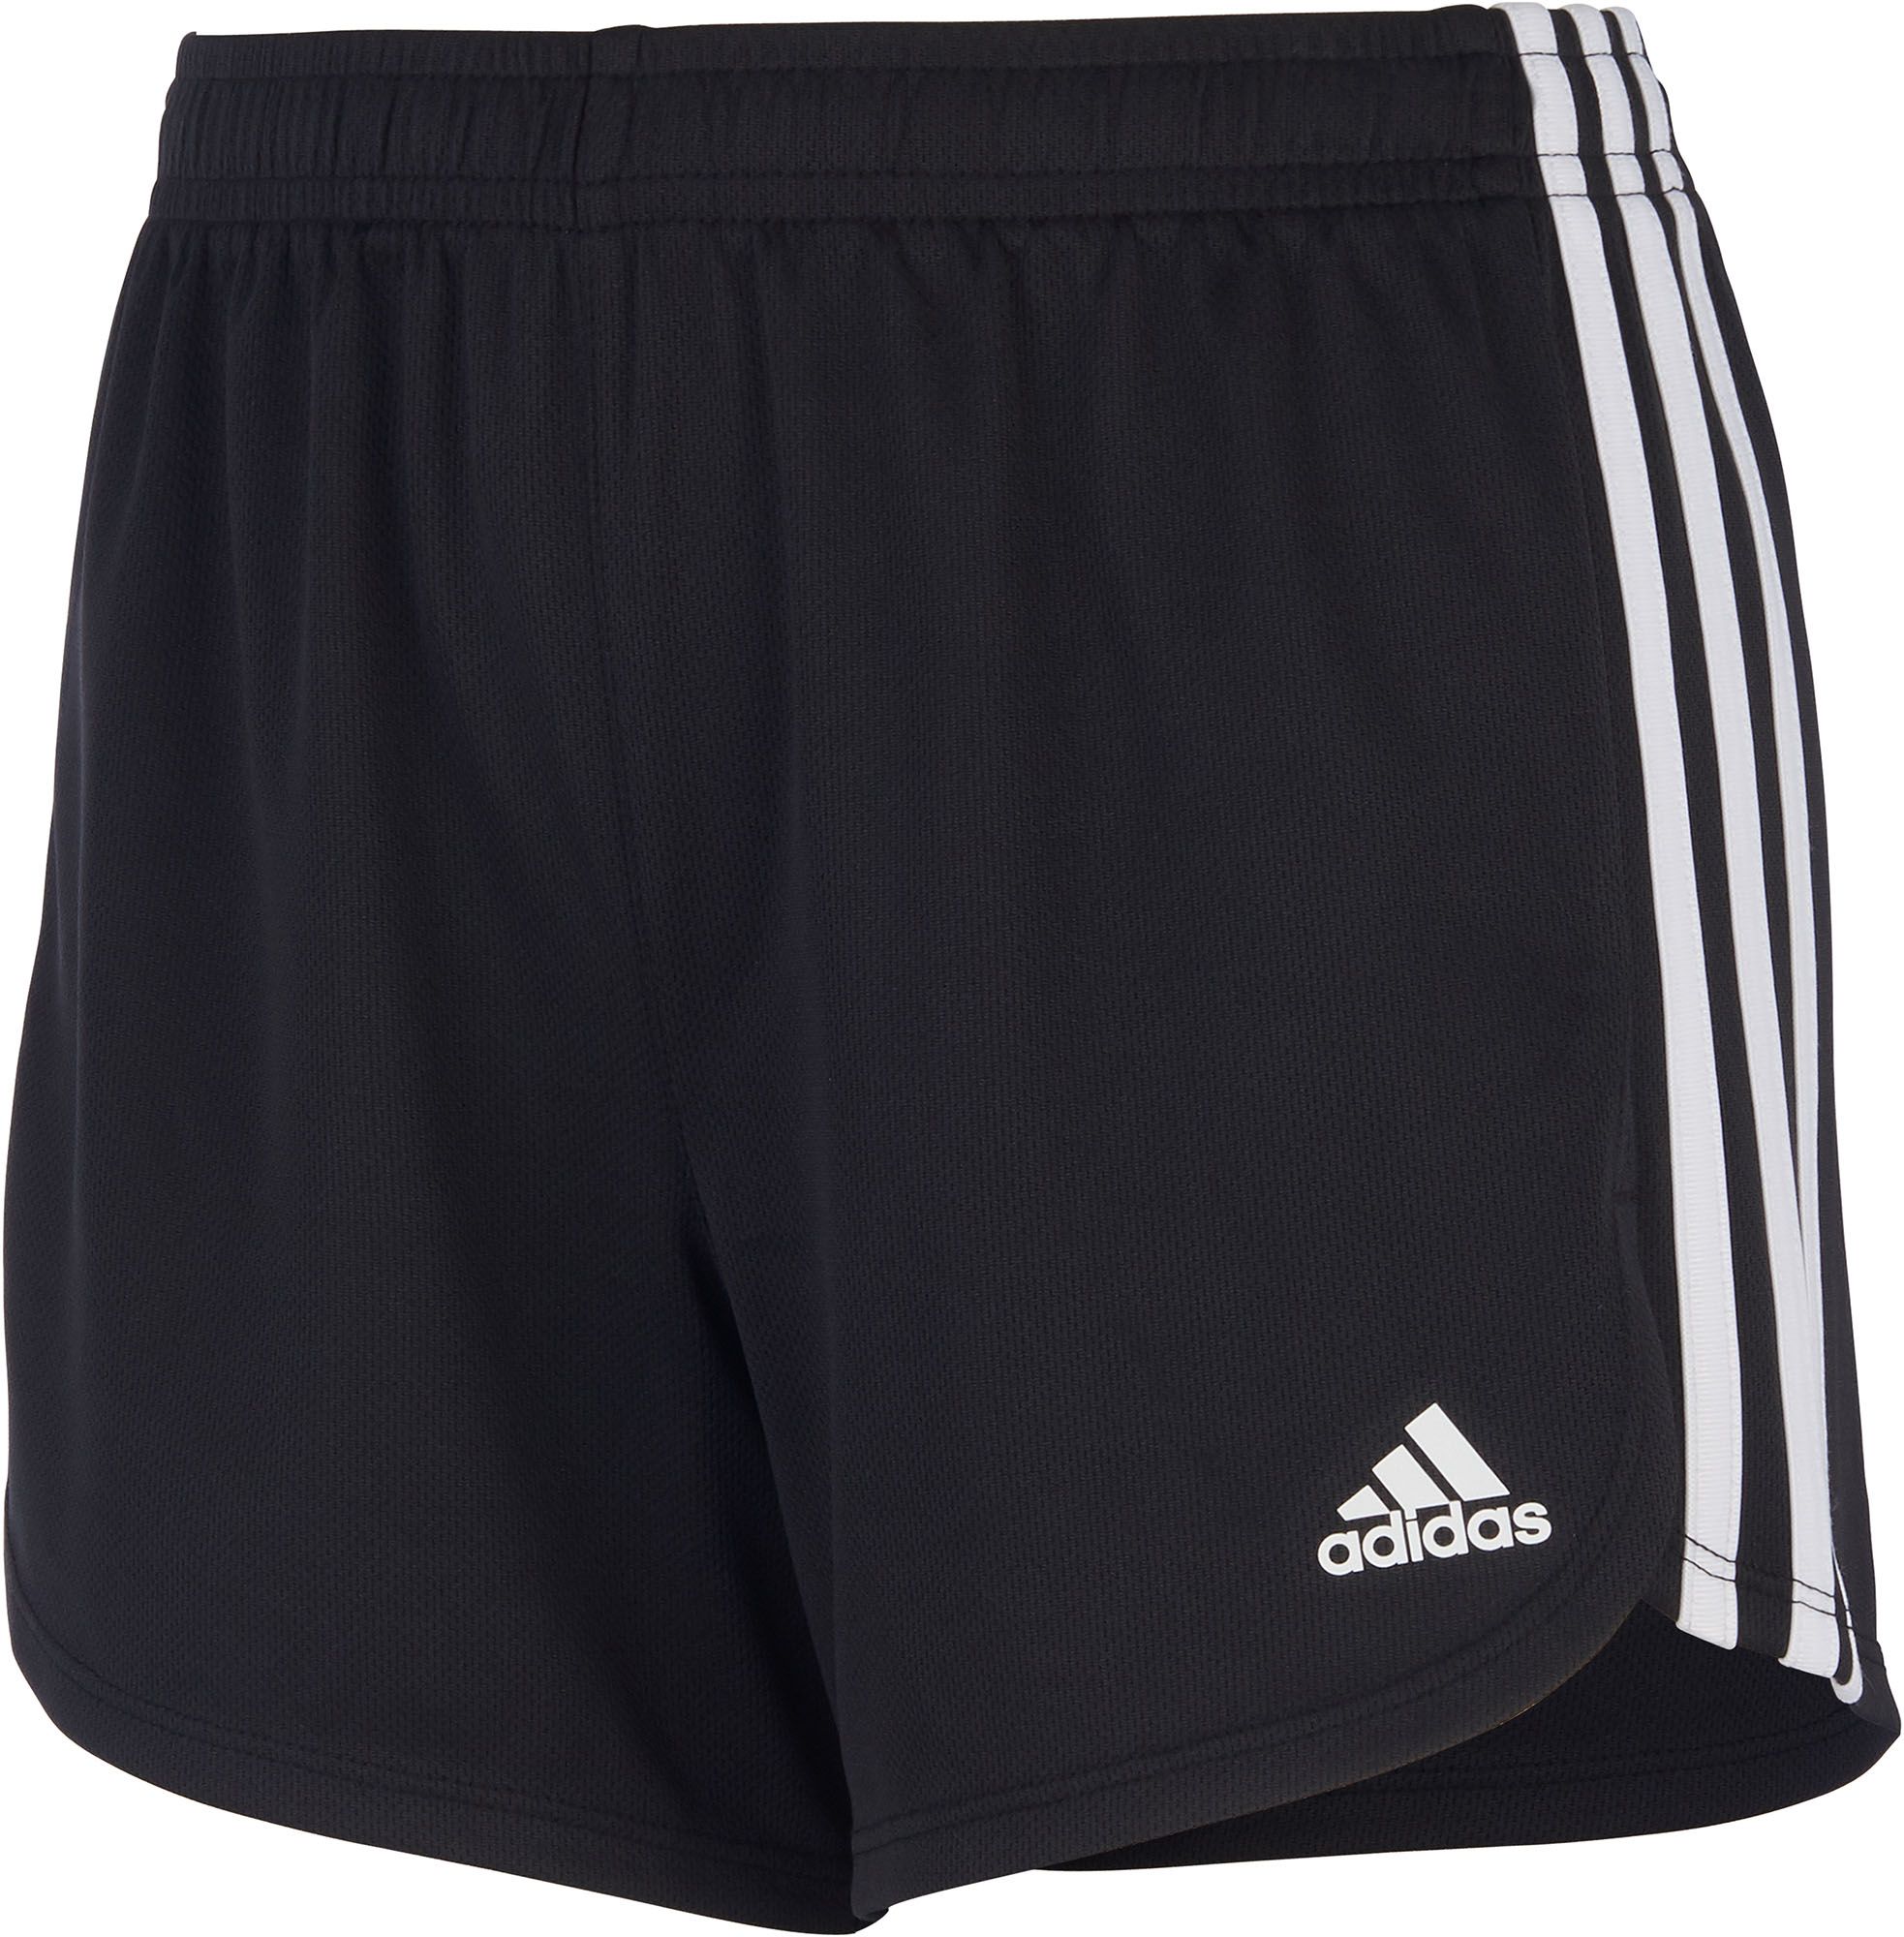 adidas basic shorts